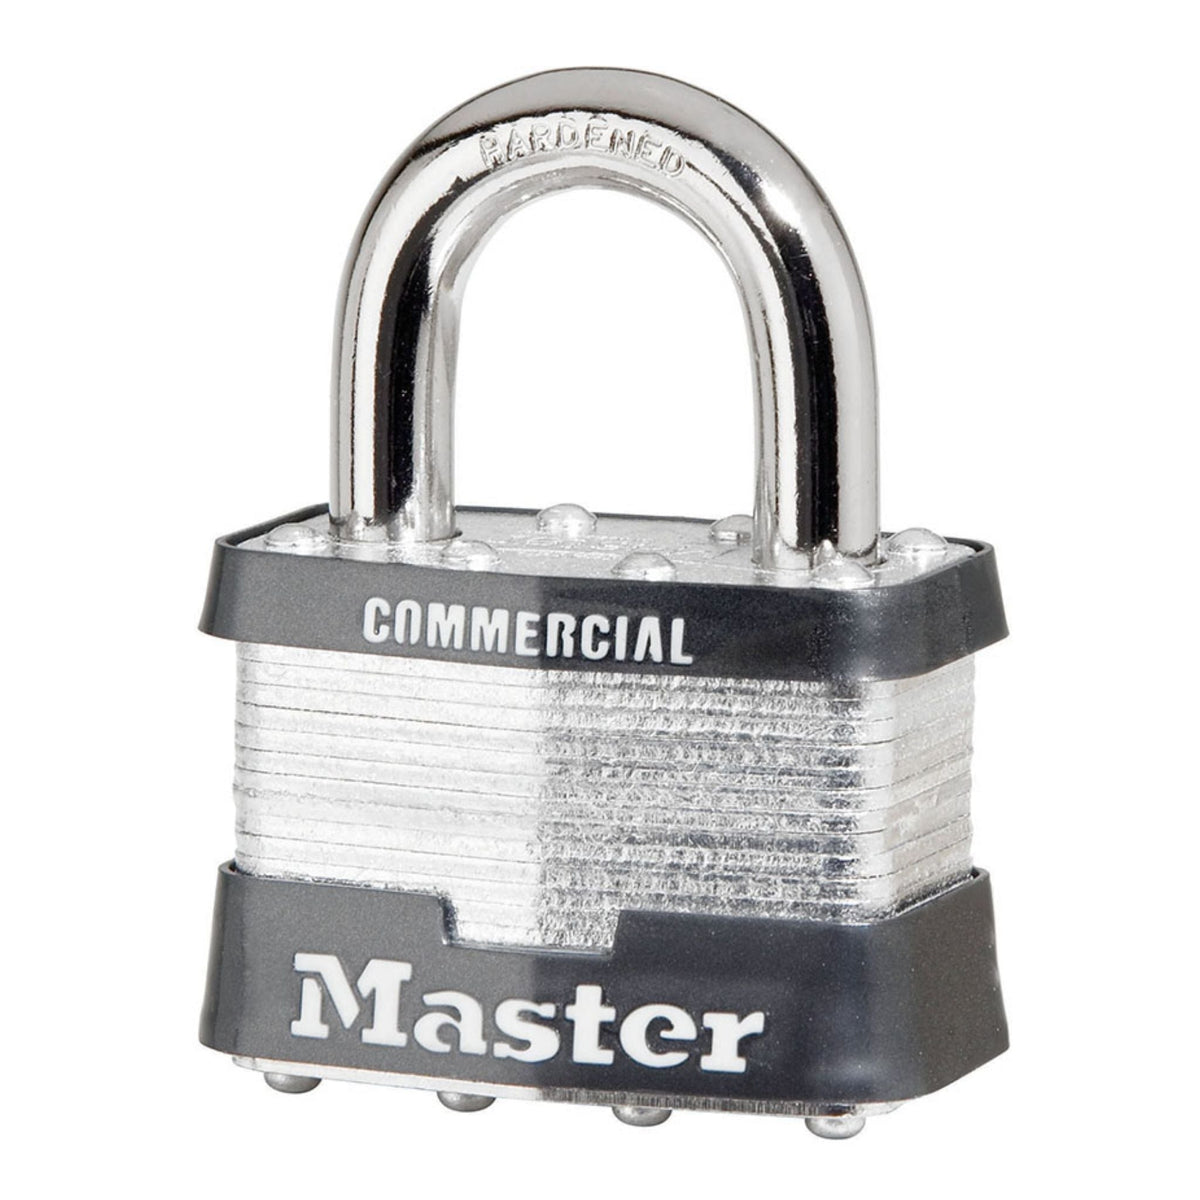 Master Lock 5KA 2004 Lock Laminated Steel Padlocks Keyed Alike to KA# 2004 Locks - The Lock Source